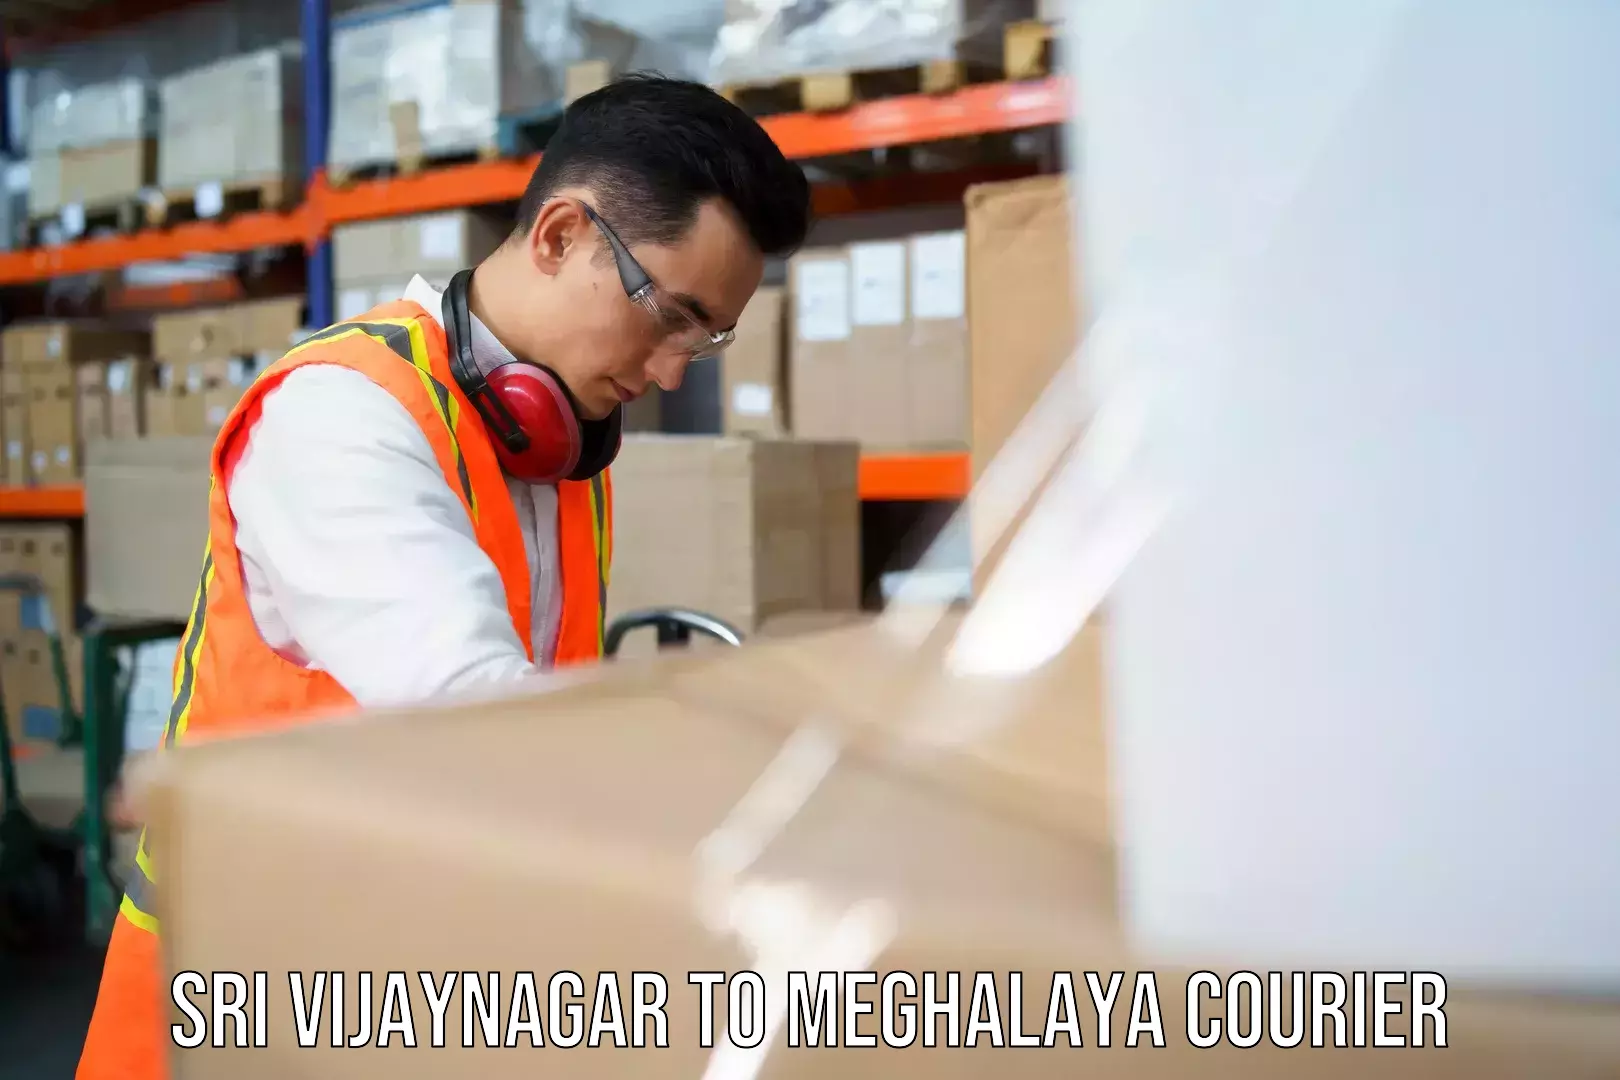 Flexible parcel services Sri Vijaynagar to Shillong